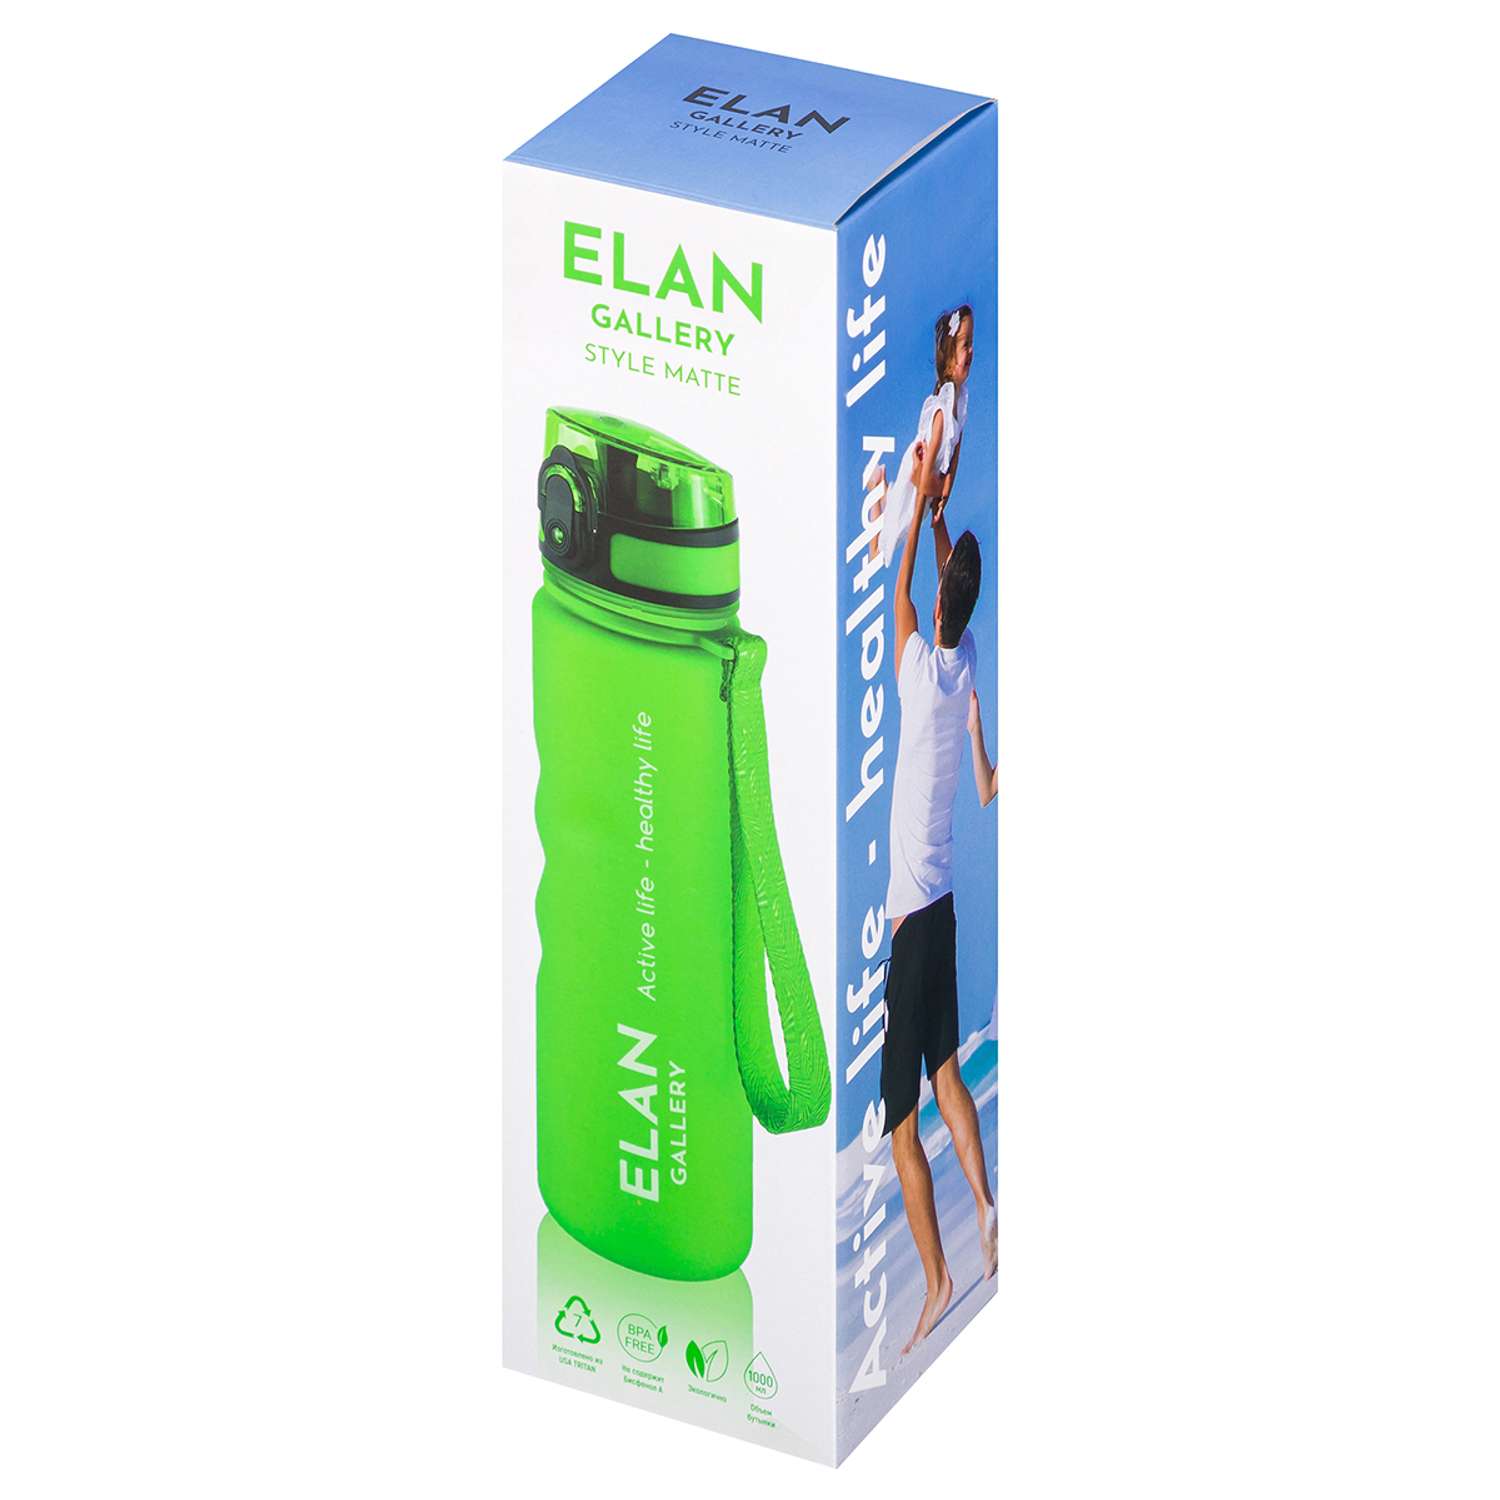 Бутылка для воды Elan Gallery 1000 мл Style Matte ярко-зеленая - фото 12